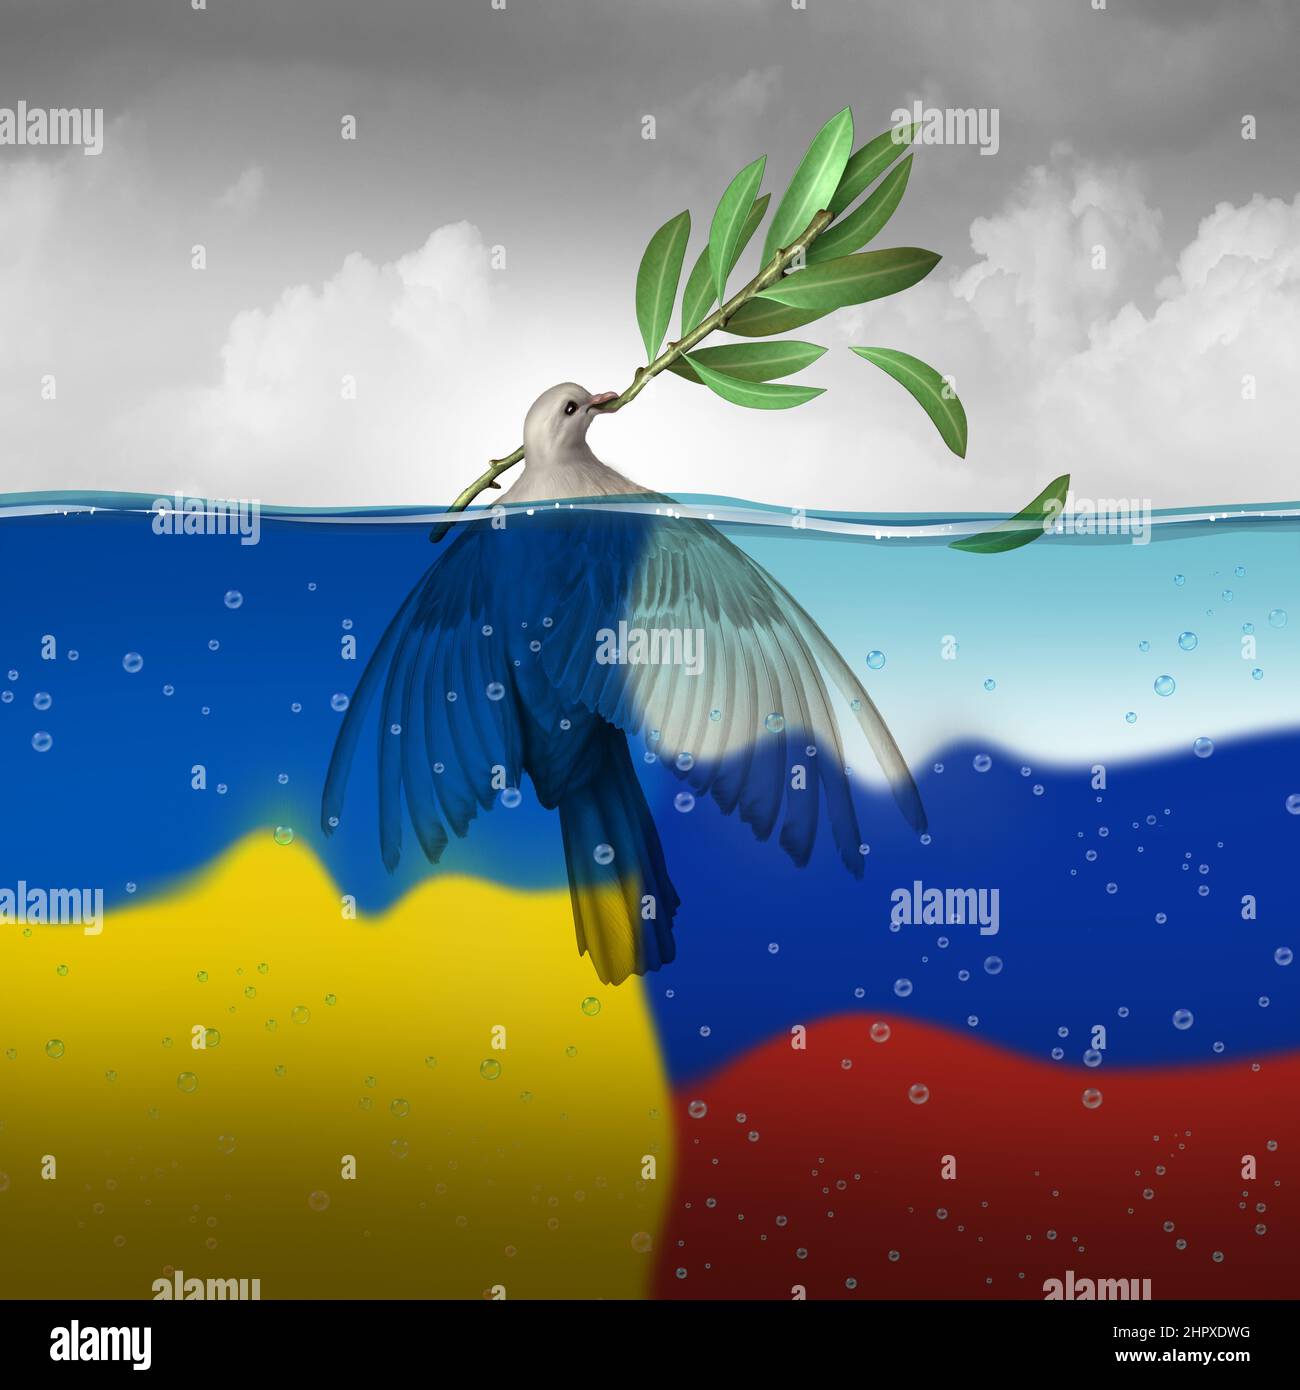 Ucraina Russia guerra come Ucraina e Russia crisi come dolorosa lotta tra due nazioni europee come una tragica lotta diplomatica con la pace. Foto Stock